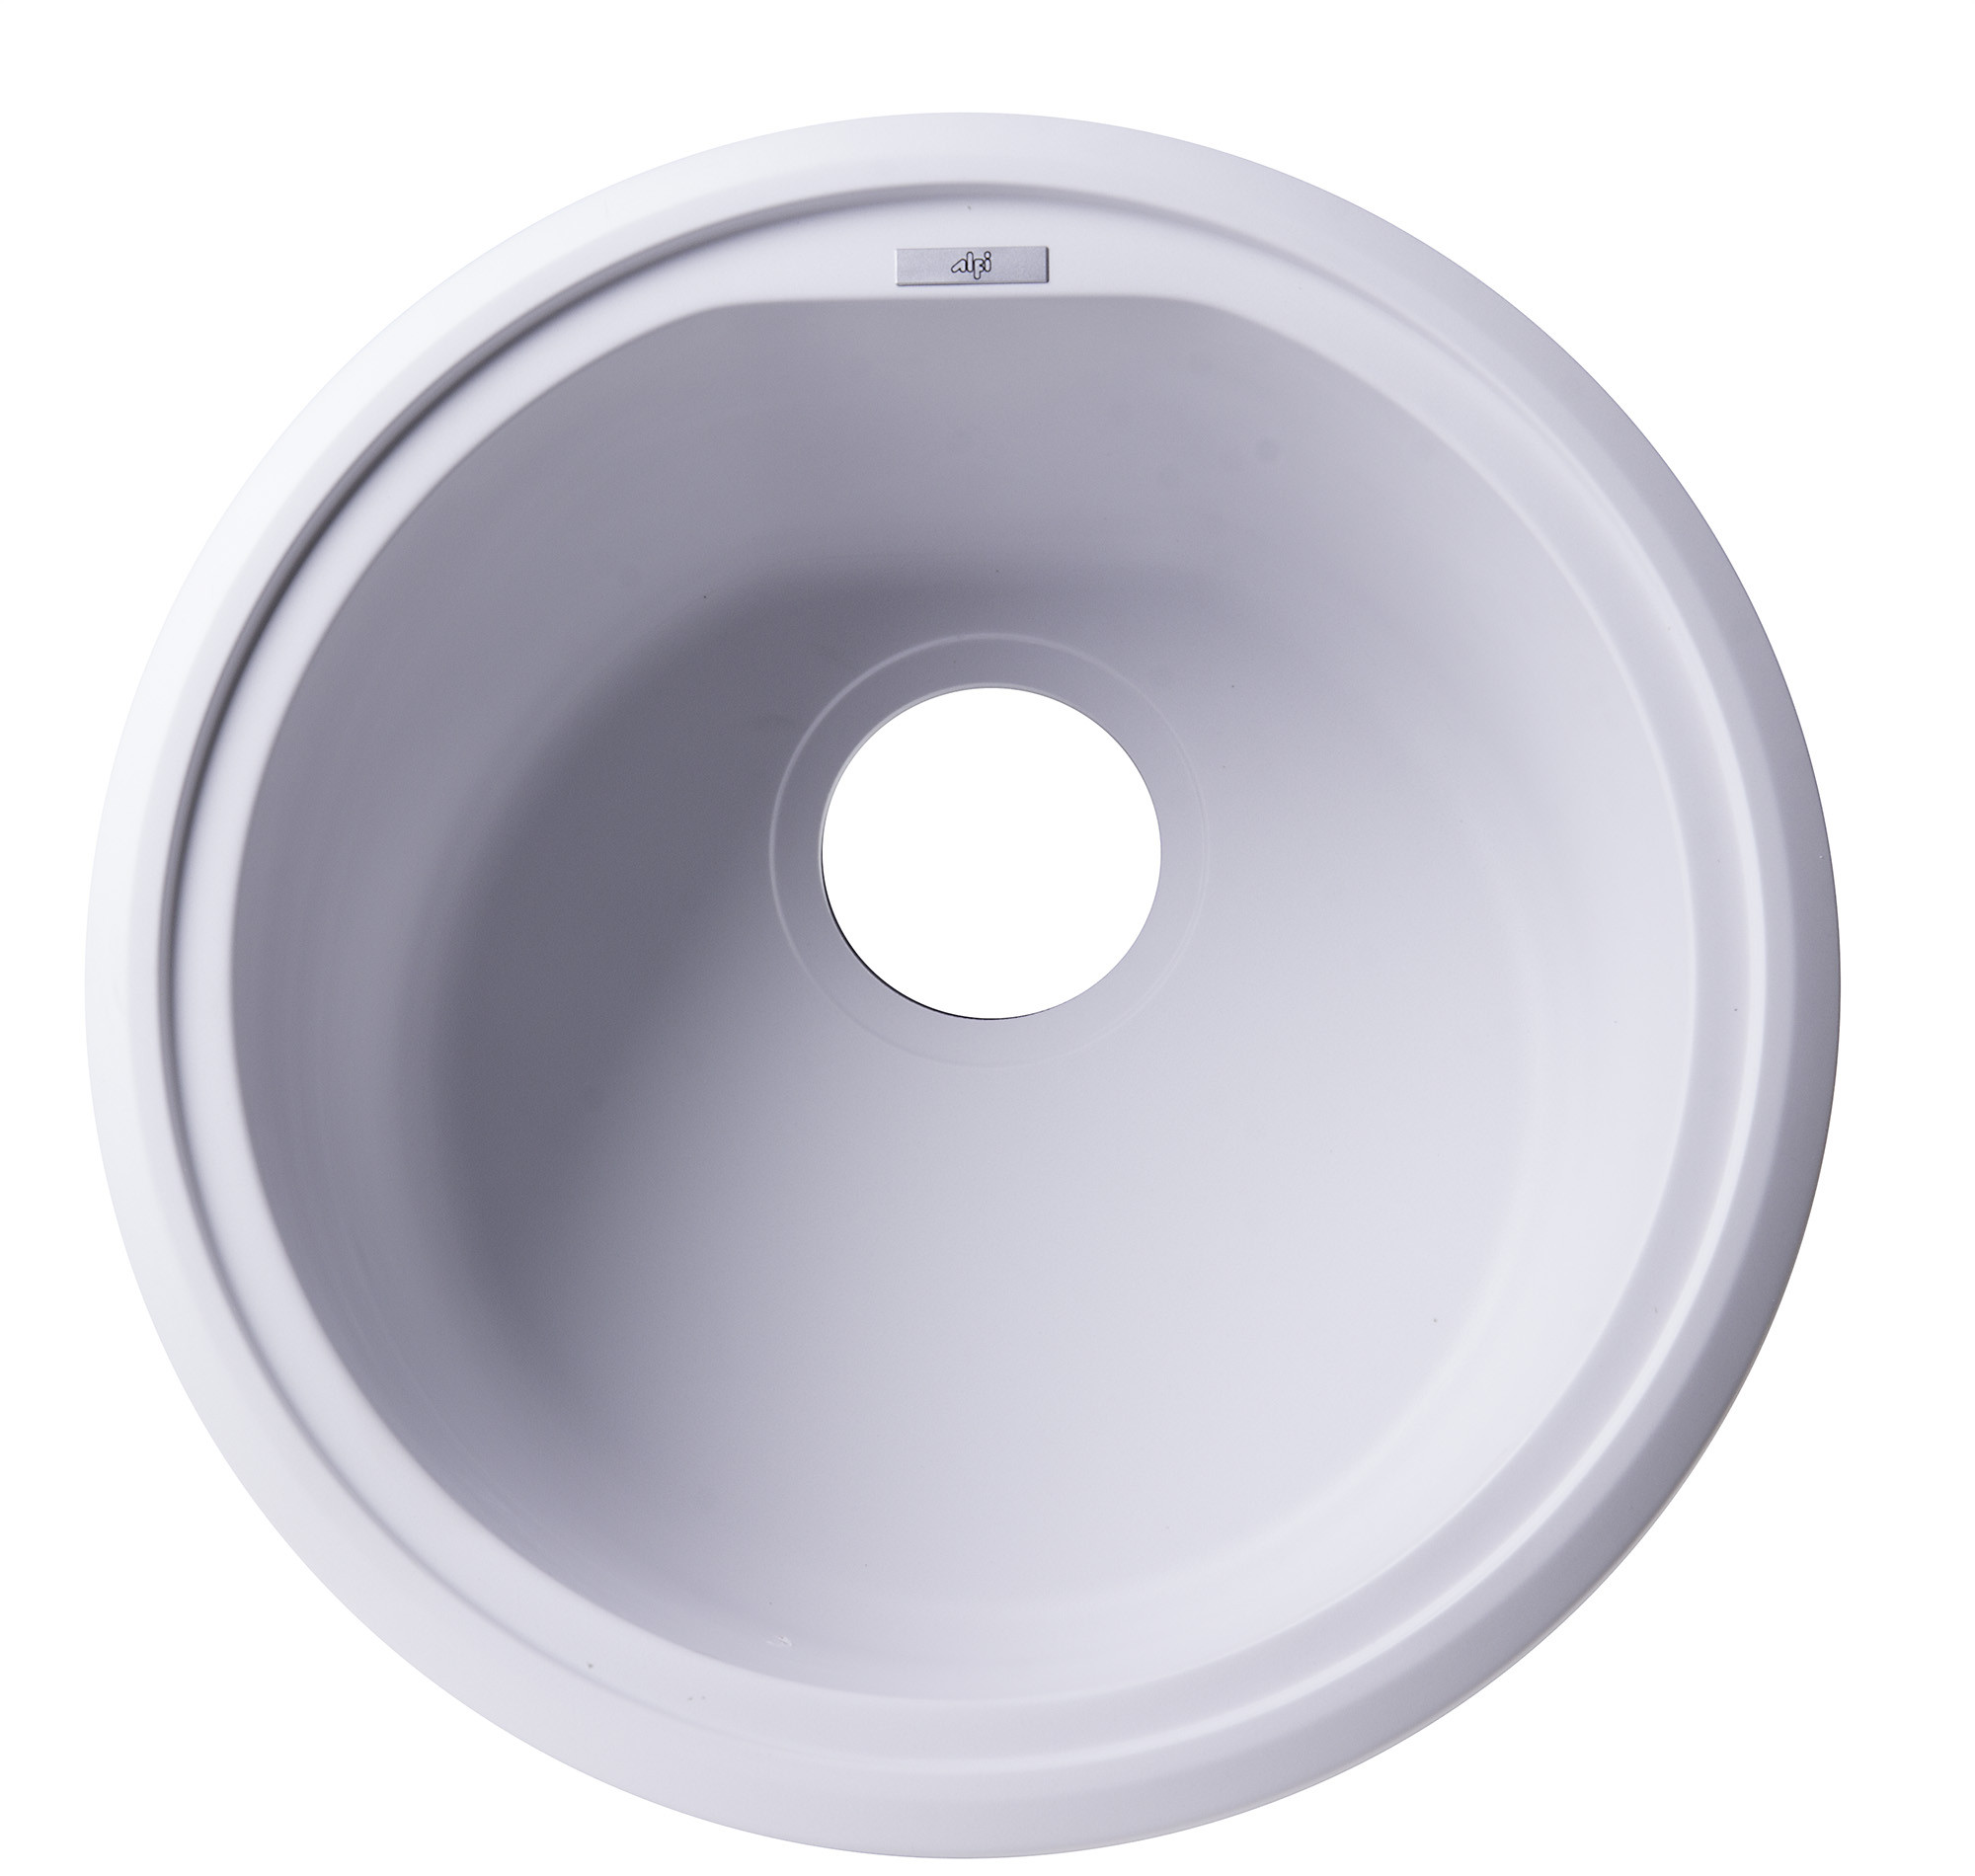 ALFI brand AB1717DI-W White 17" Drop-In Round Granite Kitchen Prep Sink